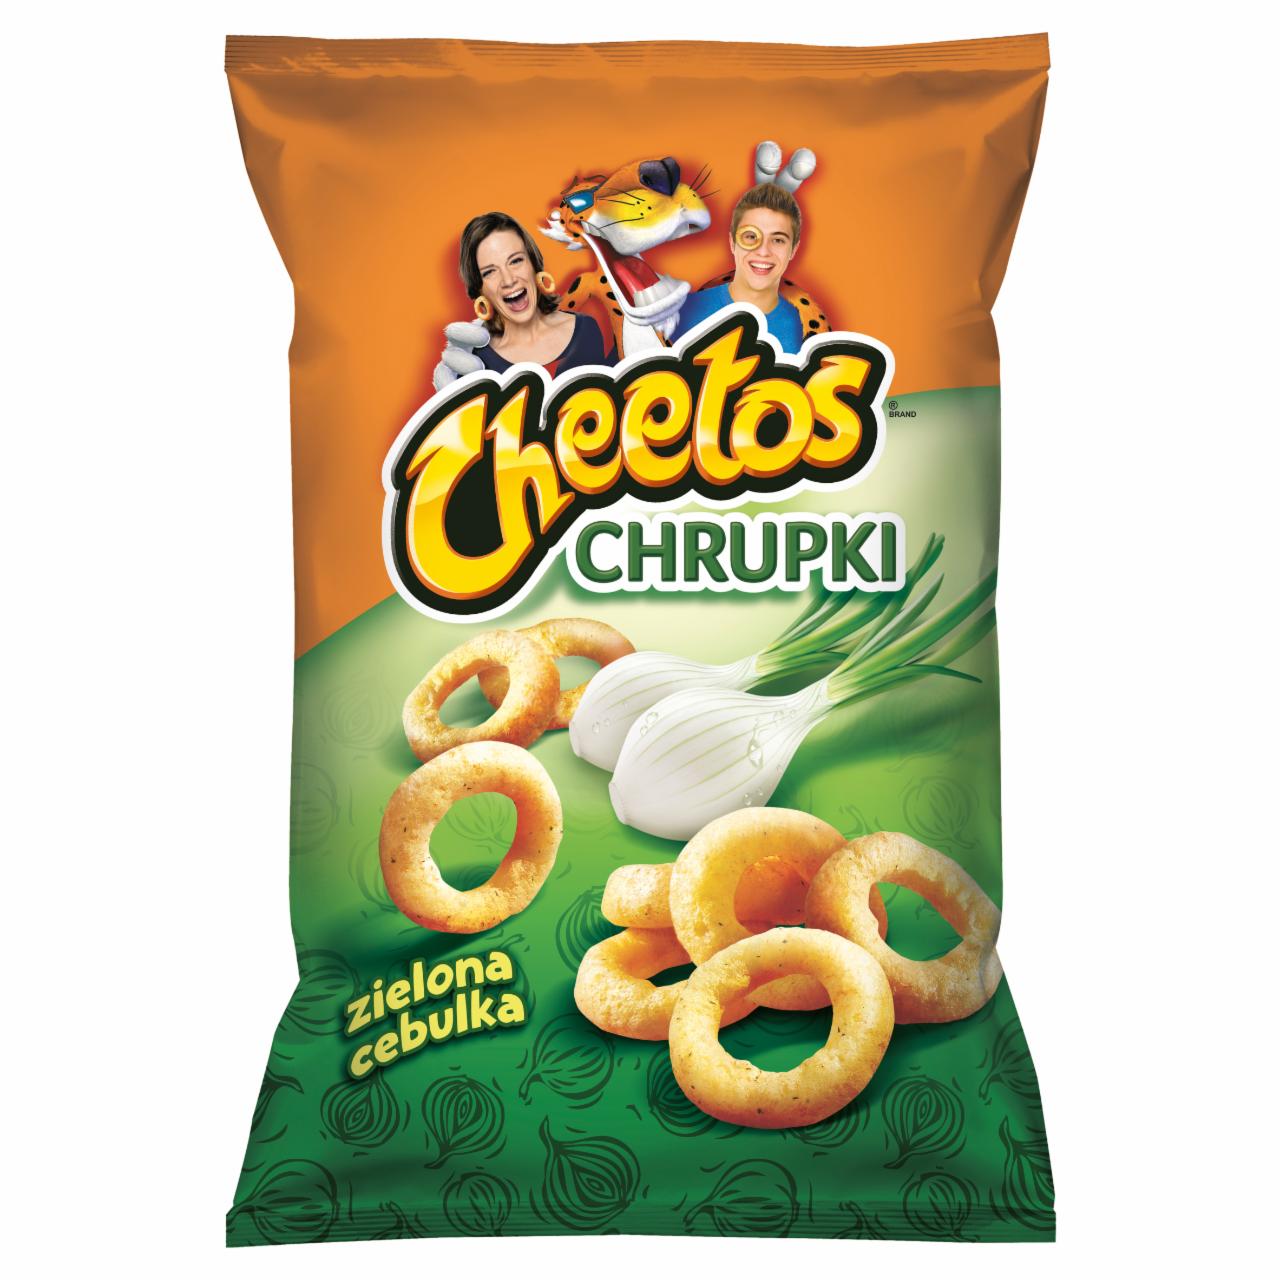 Zdjęcia - Cheetos Chrupki kukurydziane o smaku zielonej cebulki 145 g